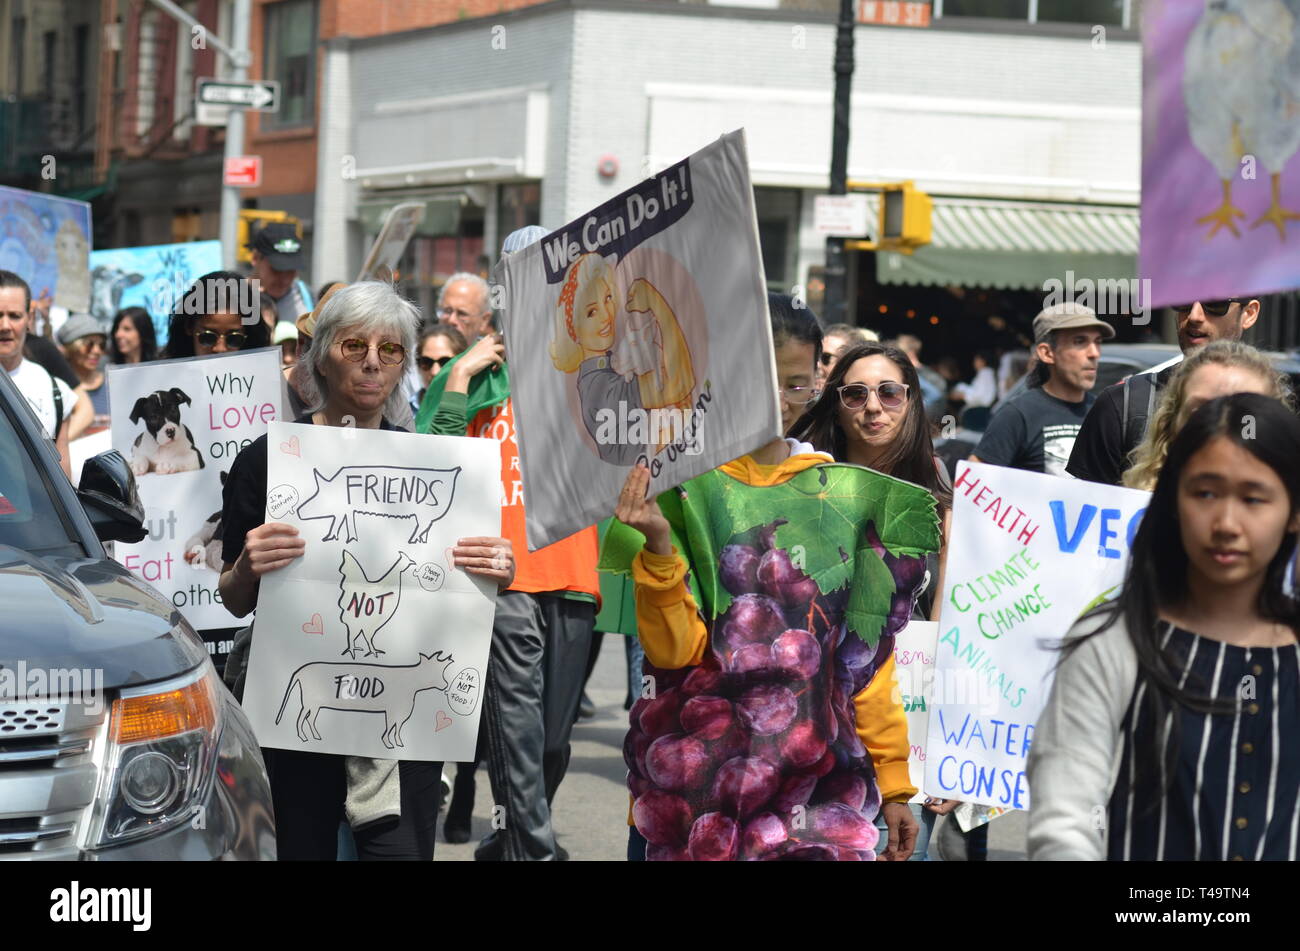 Menschen gesehen Plakate zu anderen veganen während der jährlichen Veggie Pride Parade zu fördern. Die Parade feiert Veganismus und Übungen die erste änderung Rechte derjenigen, die Gewalt gegen andere Tiere ablehnen. Stockfoto